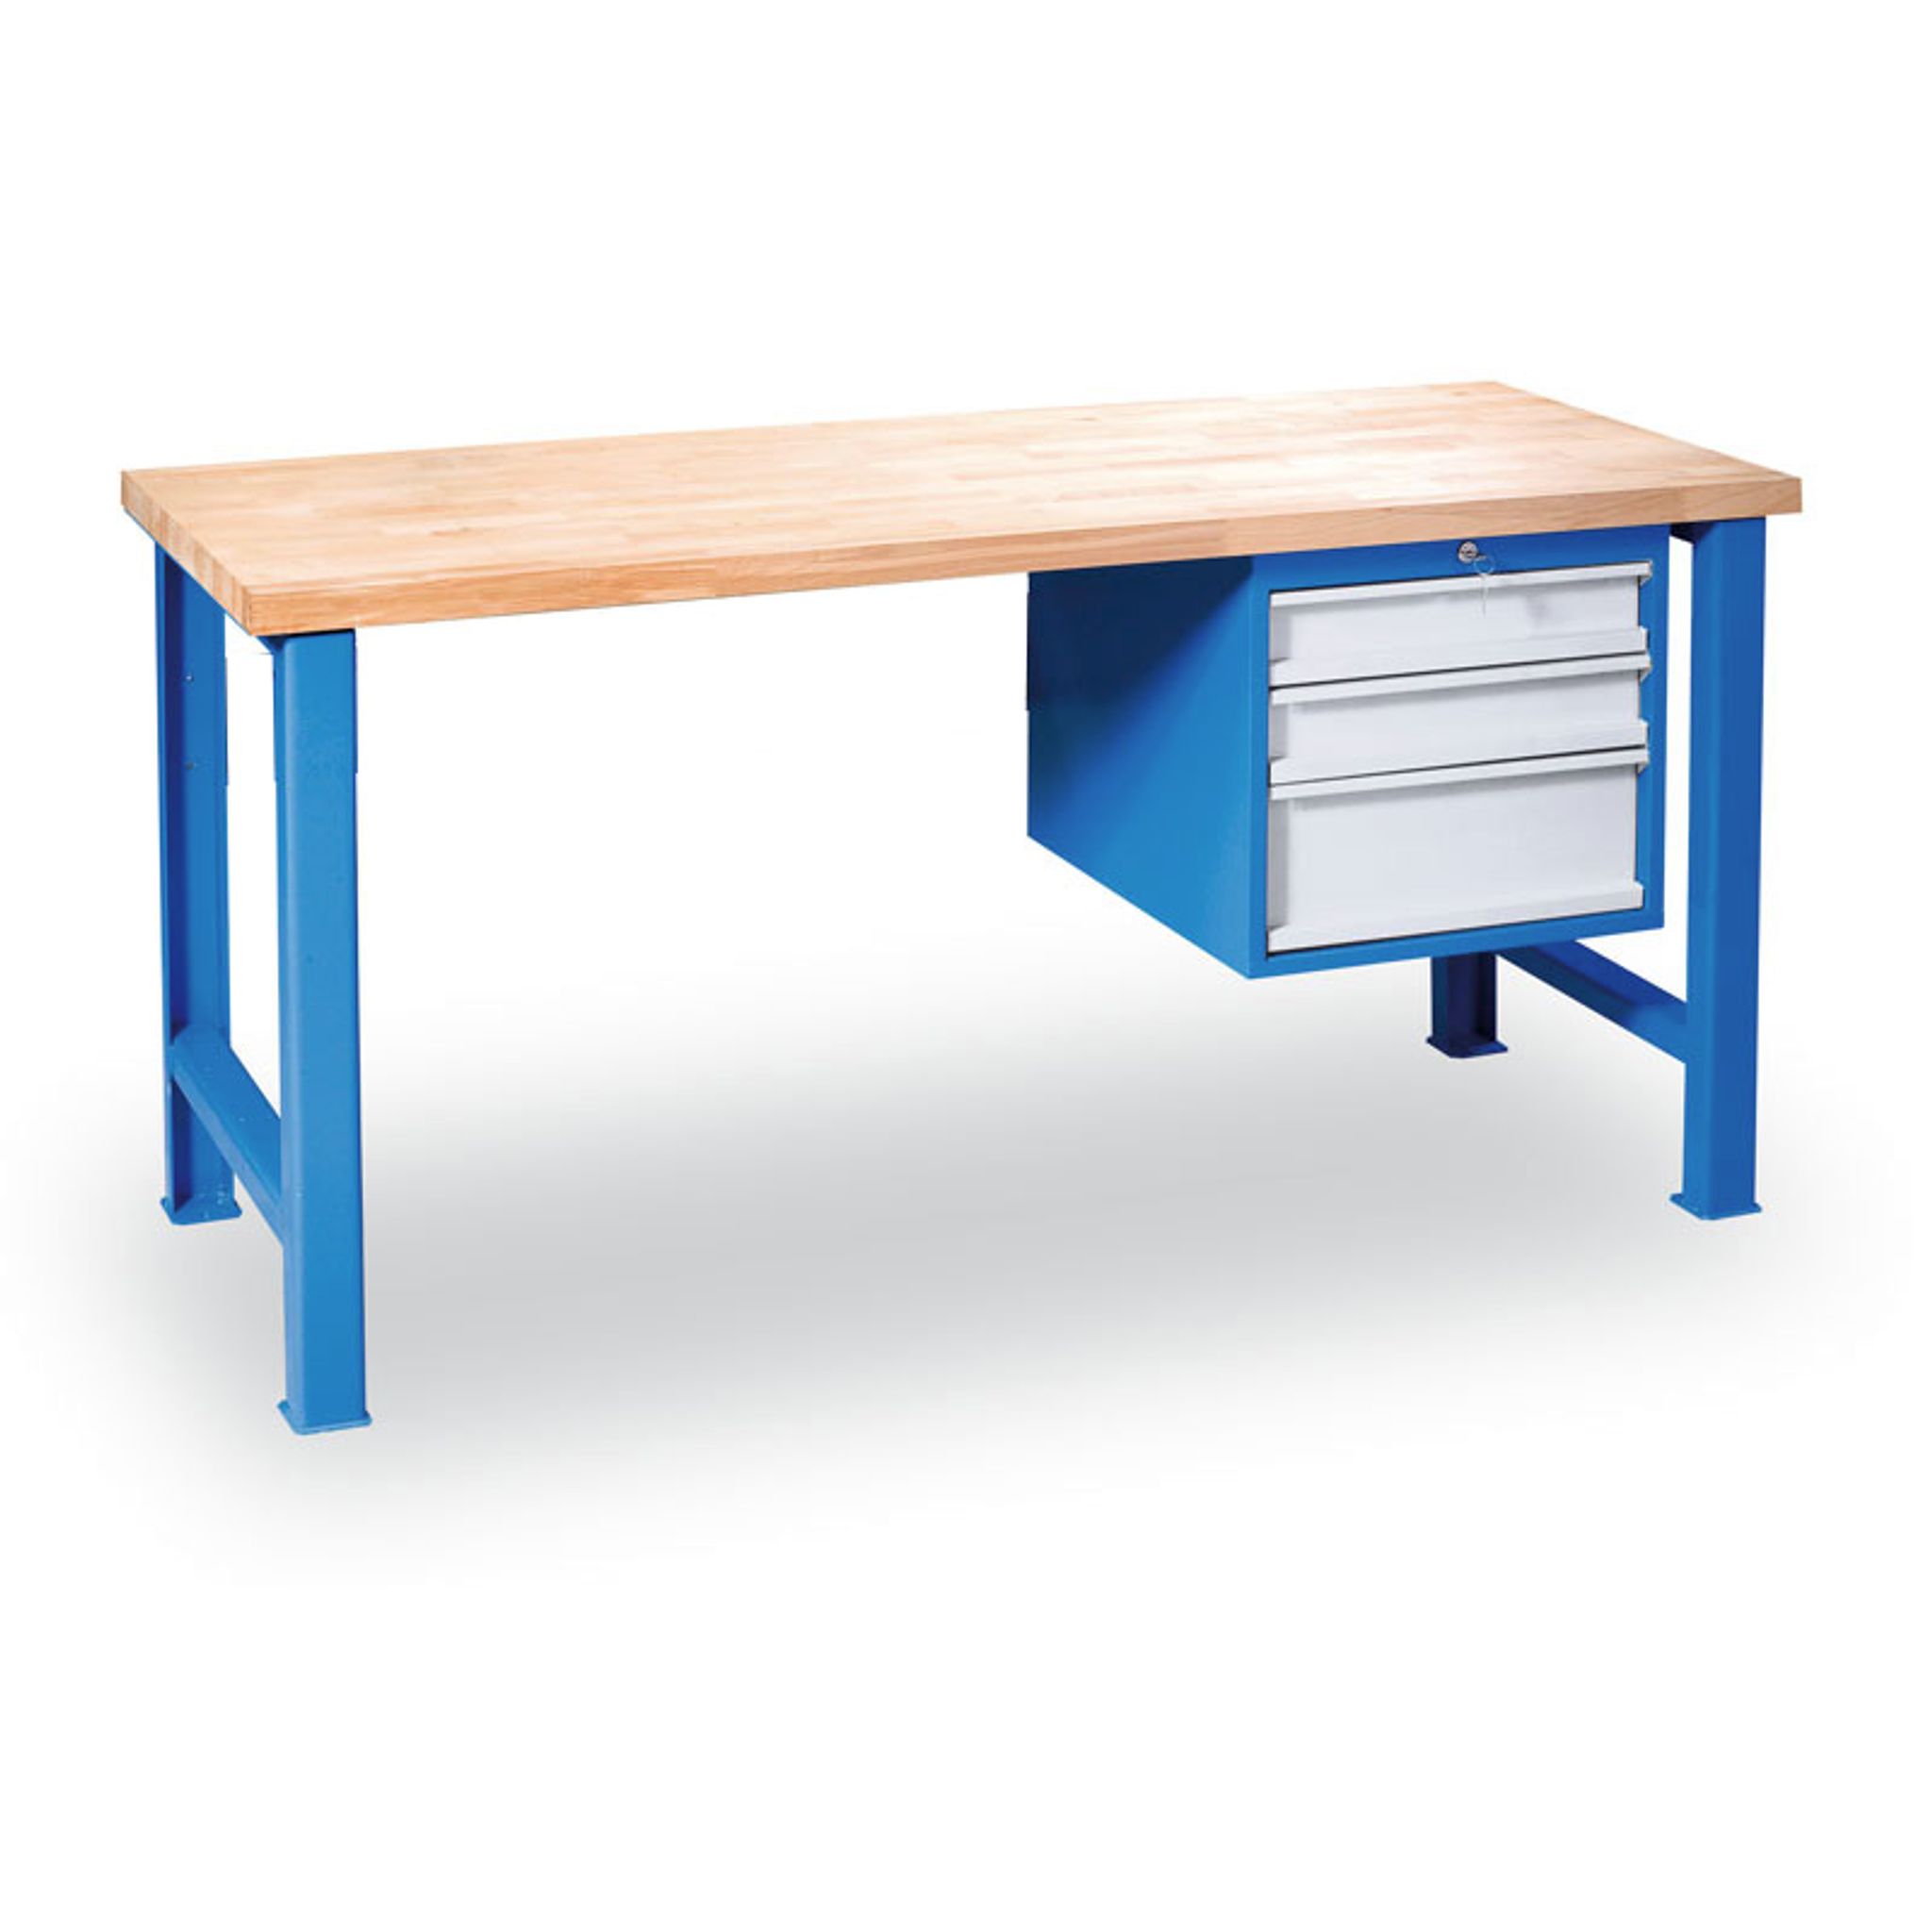 Dielenský pracovný stôl GÜDE Variant so závesným boxom na náradie, buková škárovka, 3 zásuvky, 1200 x 685 x 850 mm, modrá